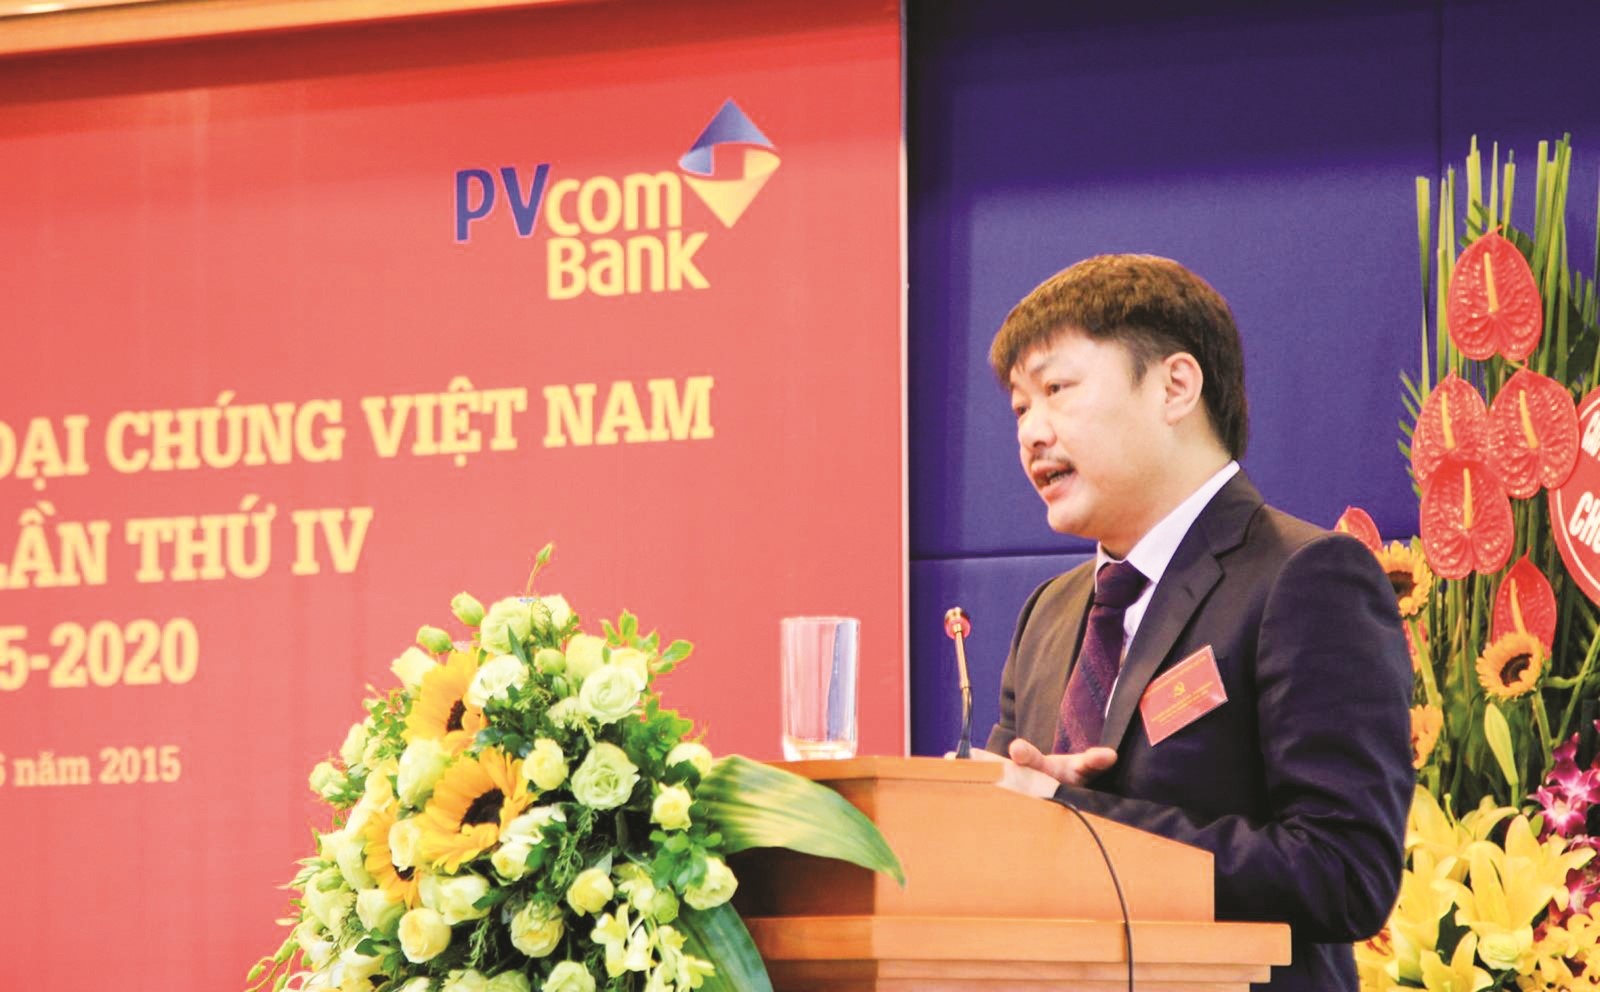 Đảng bộ PVcomBank với mục tiêu xây dựng PVcomBank trở thành ngân hàng hàng đầu tại Việt Nam